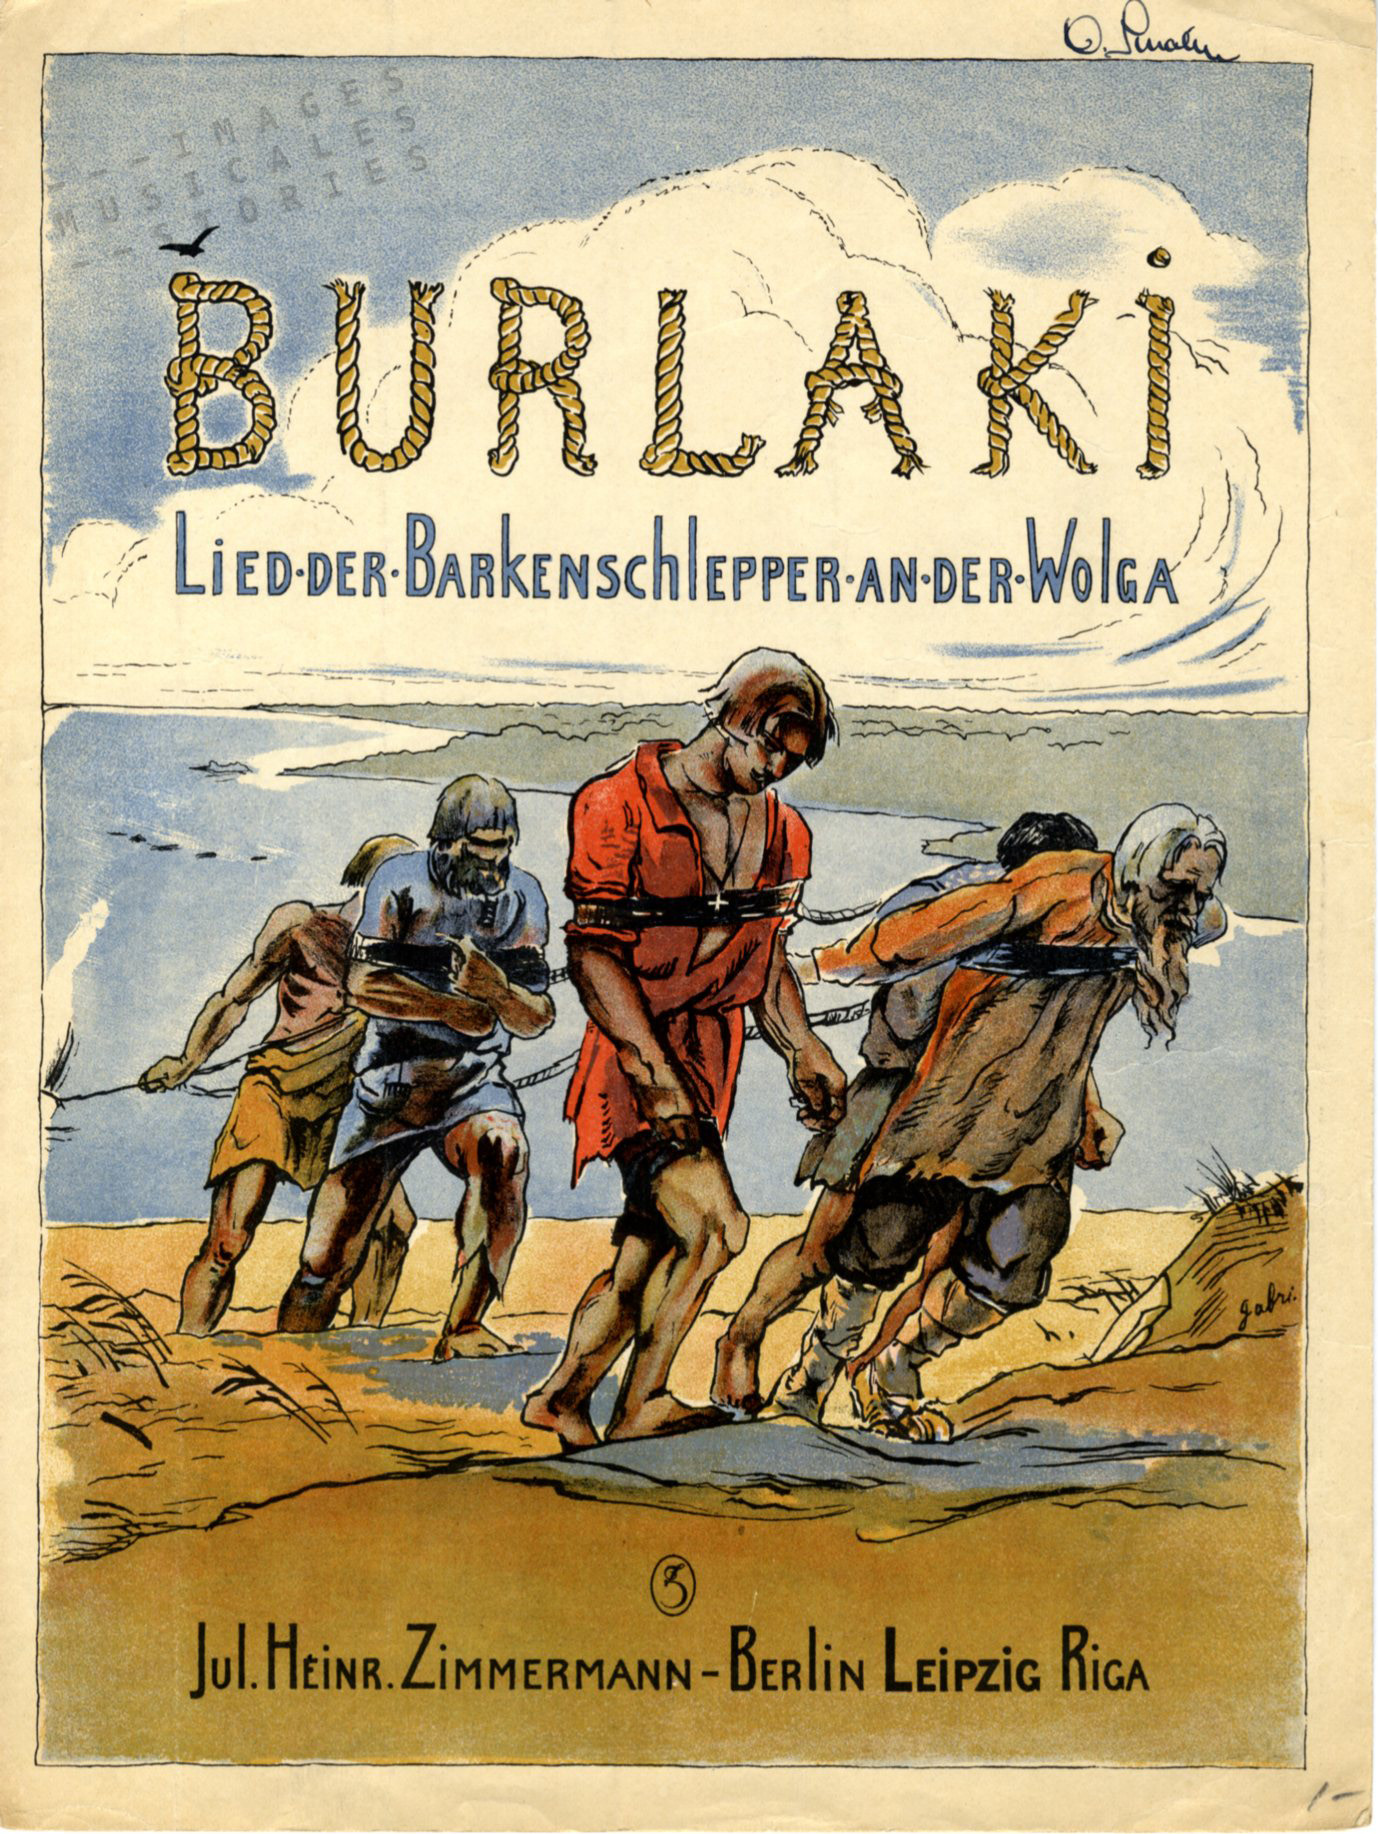 'Burlaki (Lied der Barkenschlepper an der Wolga' published by J. H. Zimmerman